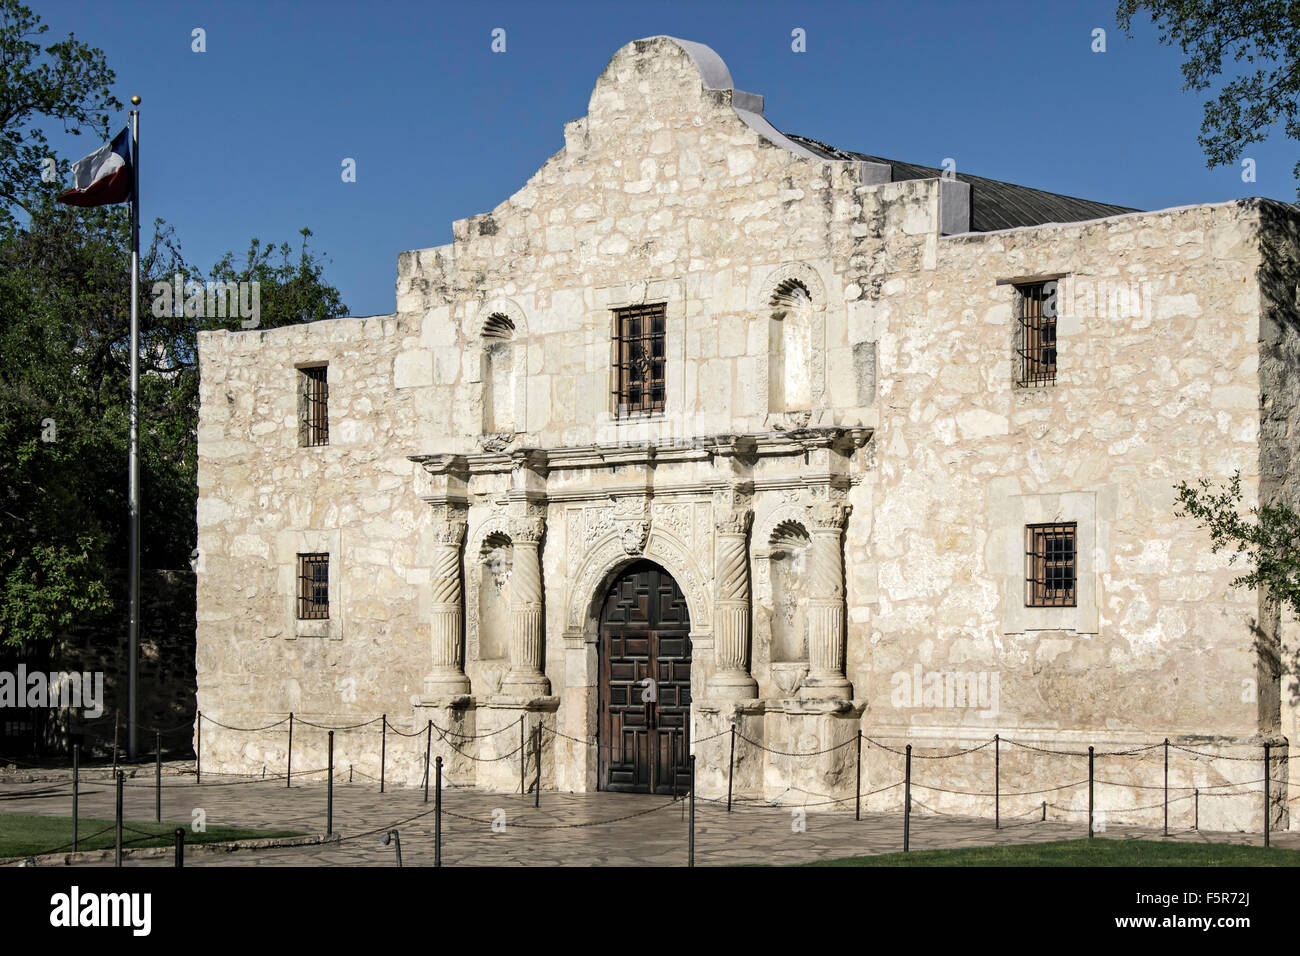 Die Alamo (Mission San Antonio de Valero), San Antonio, Texas, USA Stockfoto